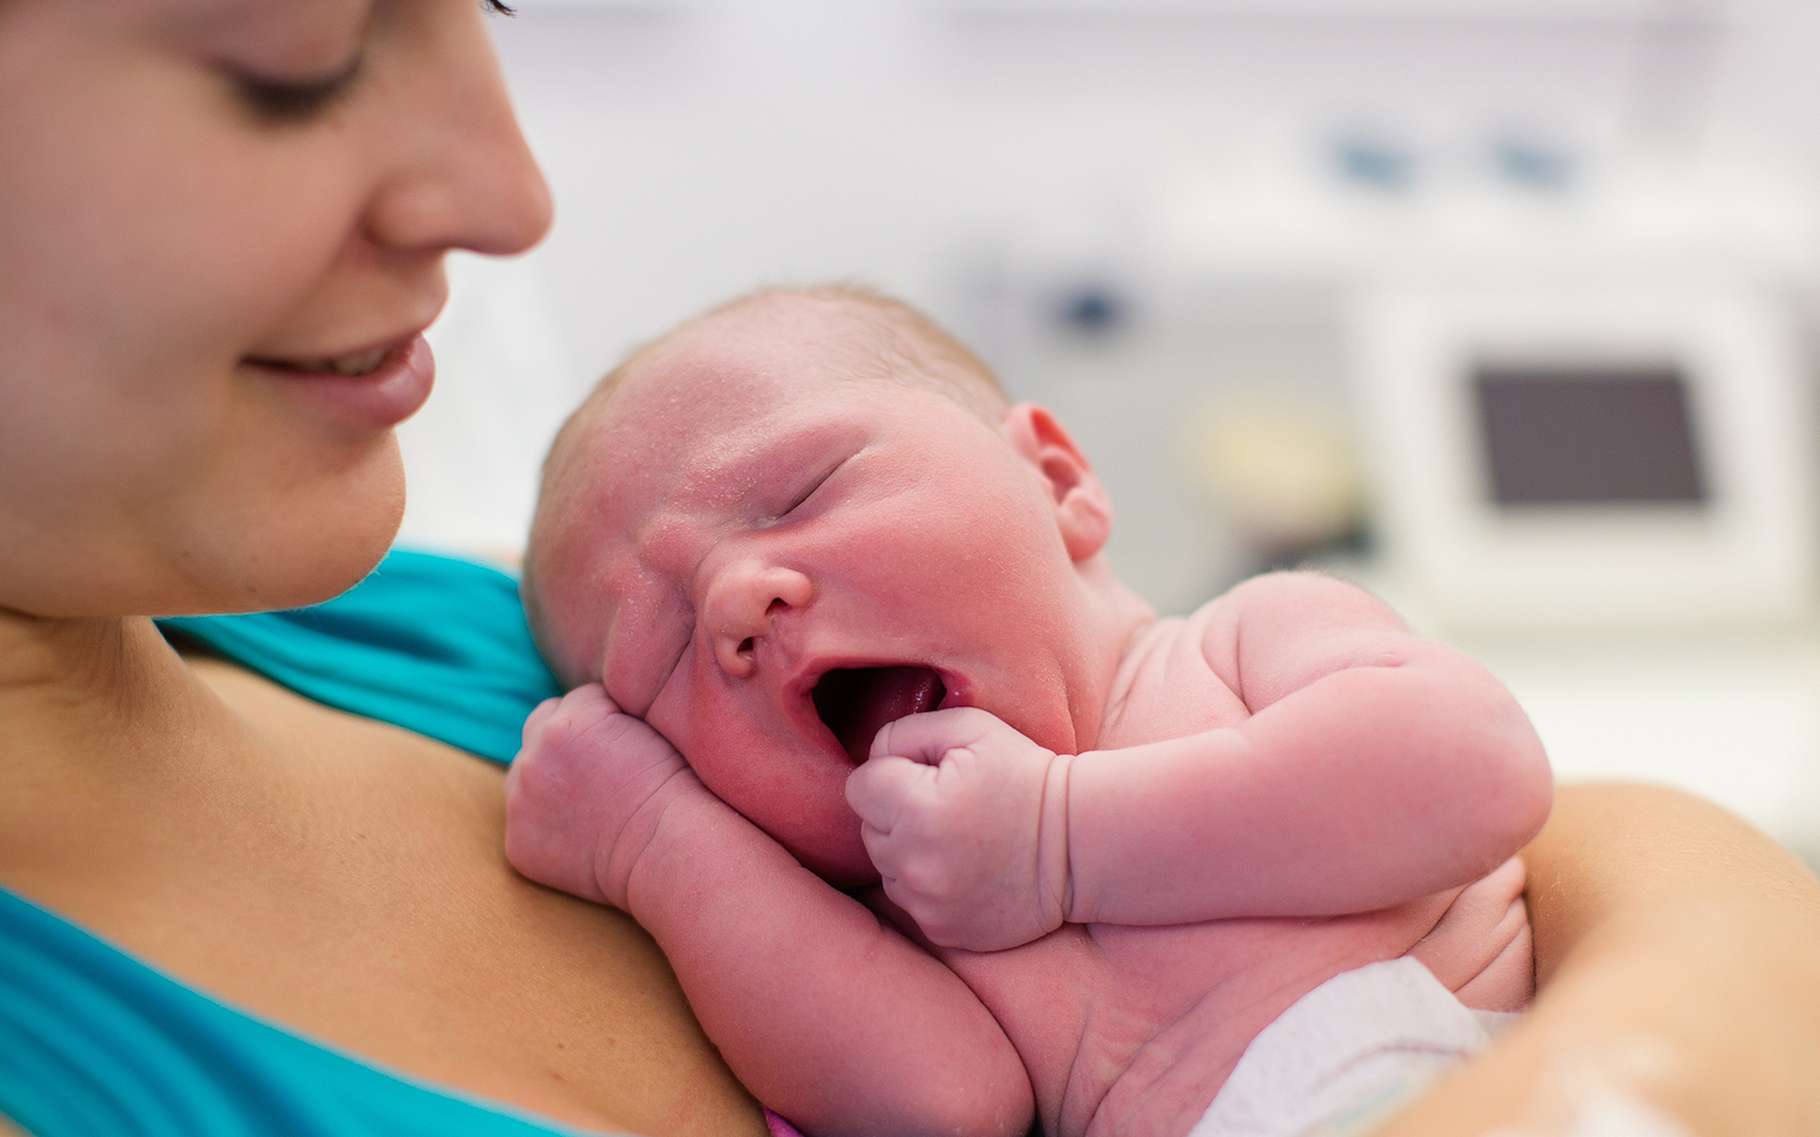 Le dépistage de la surdité chez le bébé se pratique à la maternité, dès les premiers jours de la vie. © FamVeld, Shutterstock